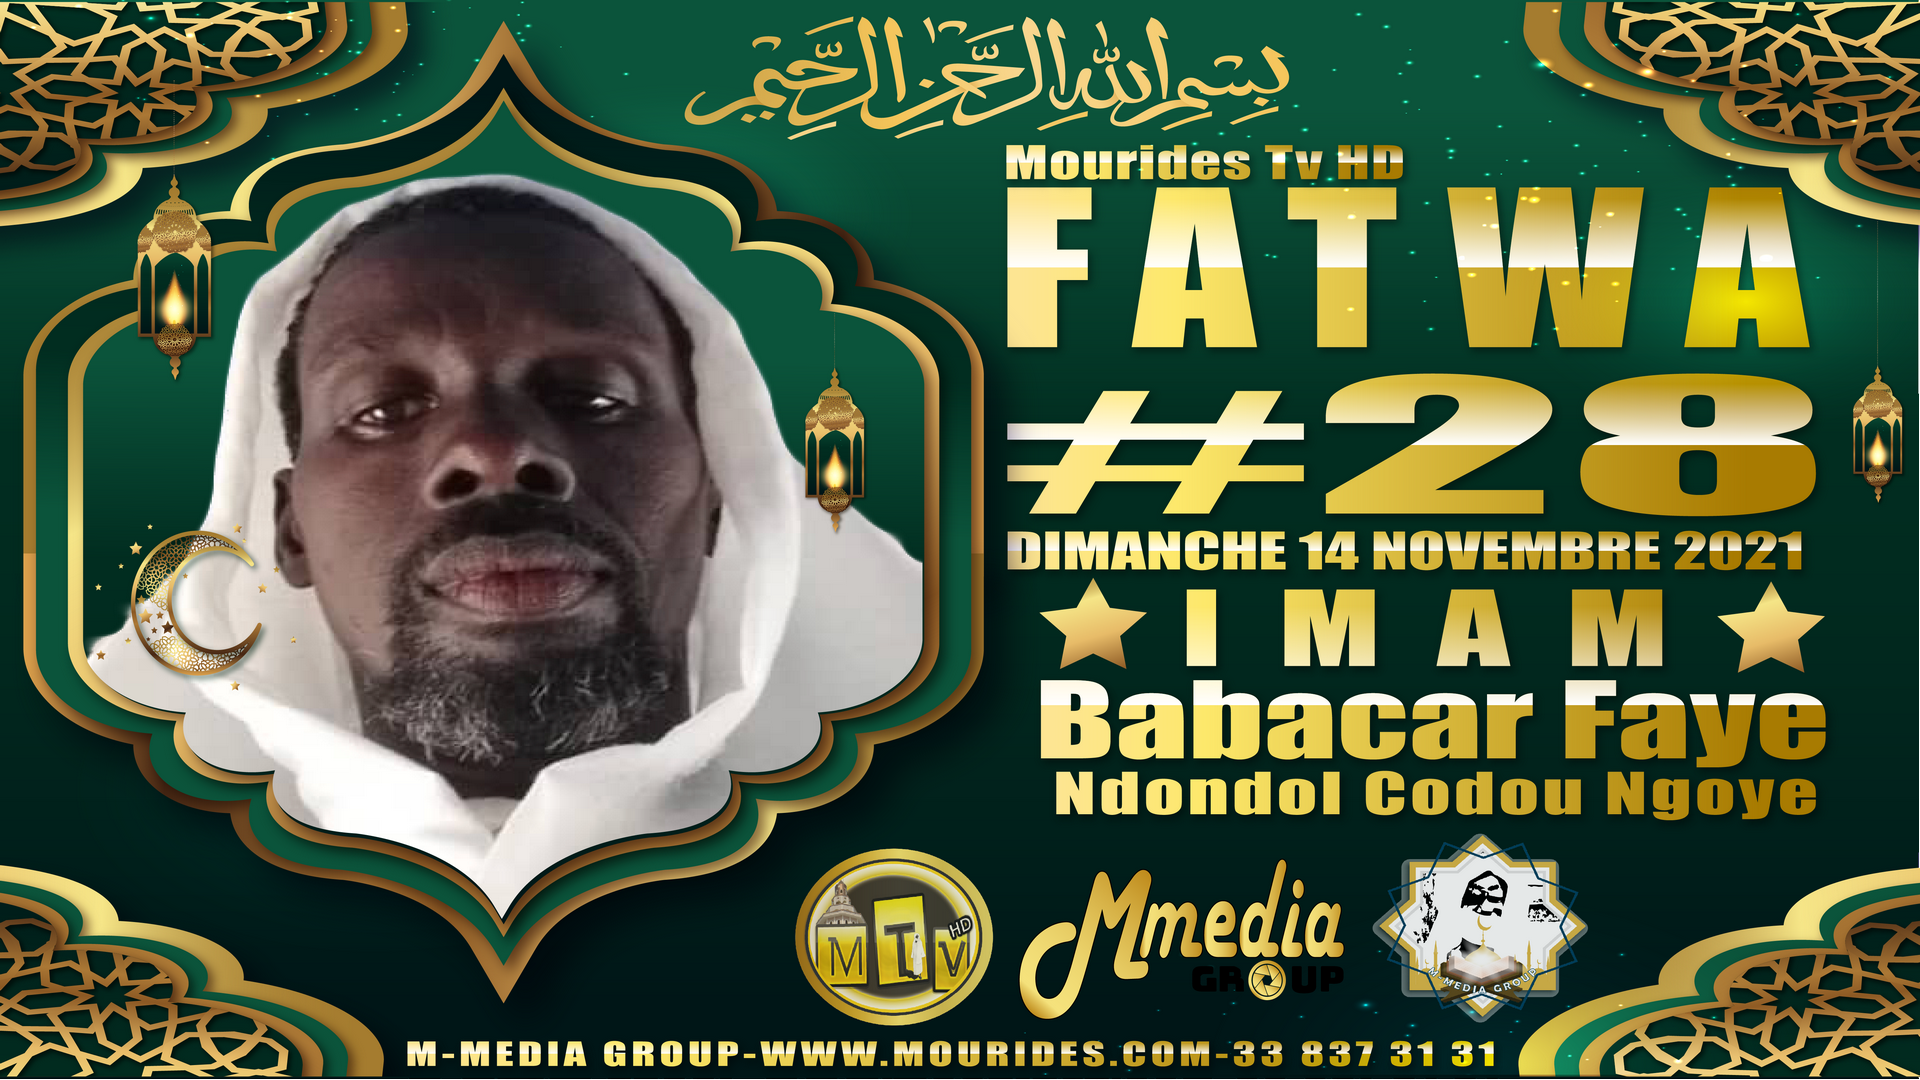 Fatwa فتوى (Consultation juridique islamique #28) Imam Babacar FAYE - Dimanche 14 novembre 2021